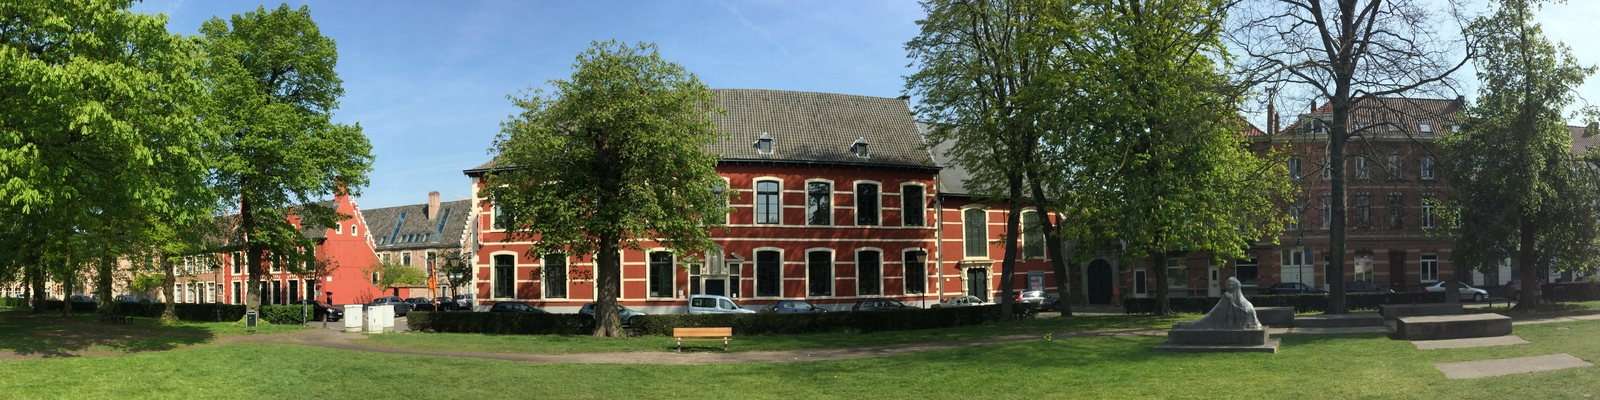 Stedelijk onderwijs Gent